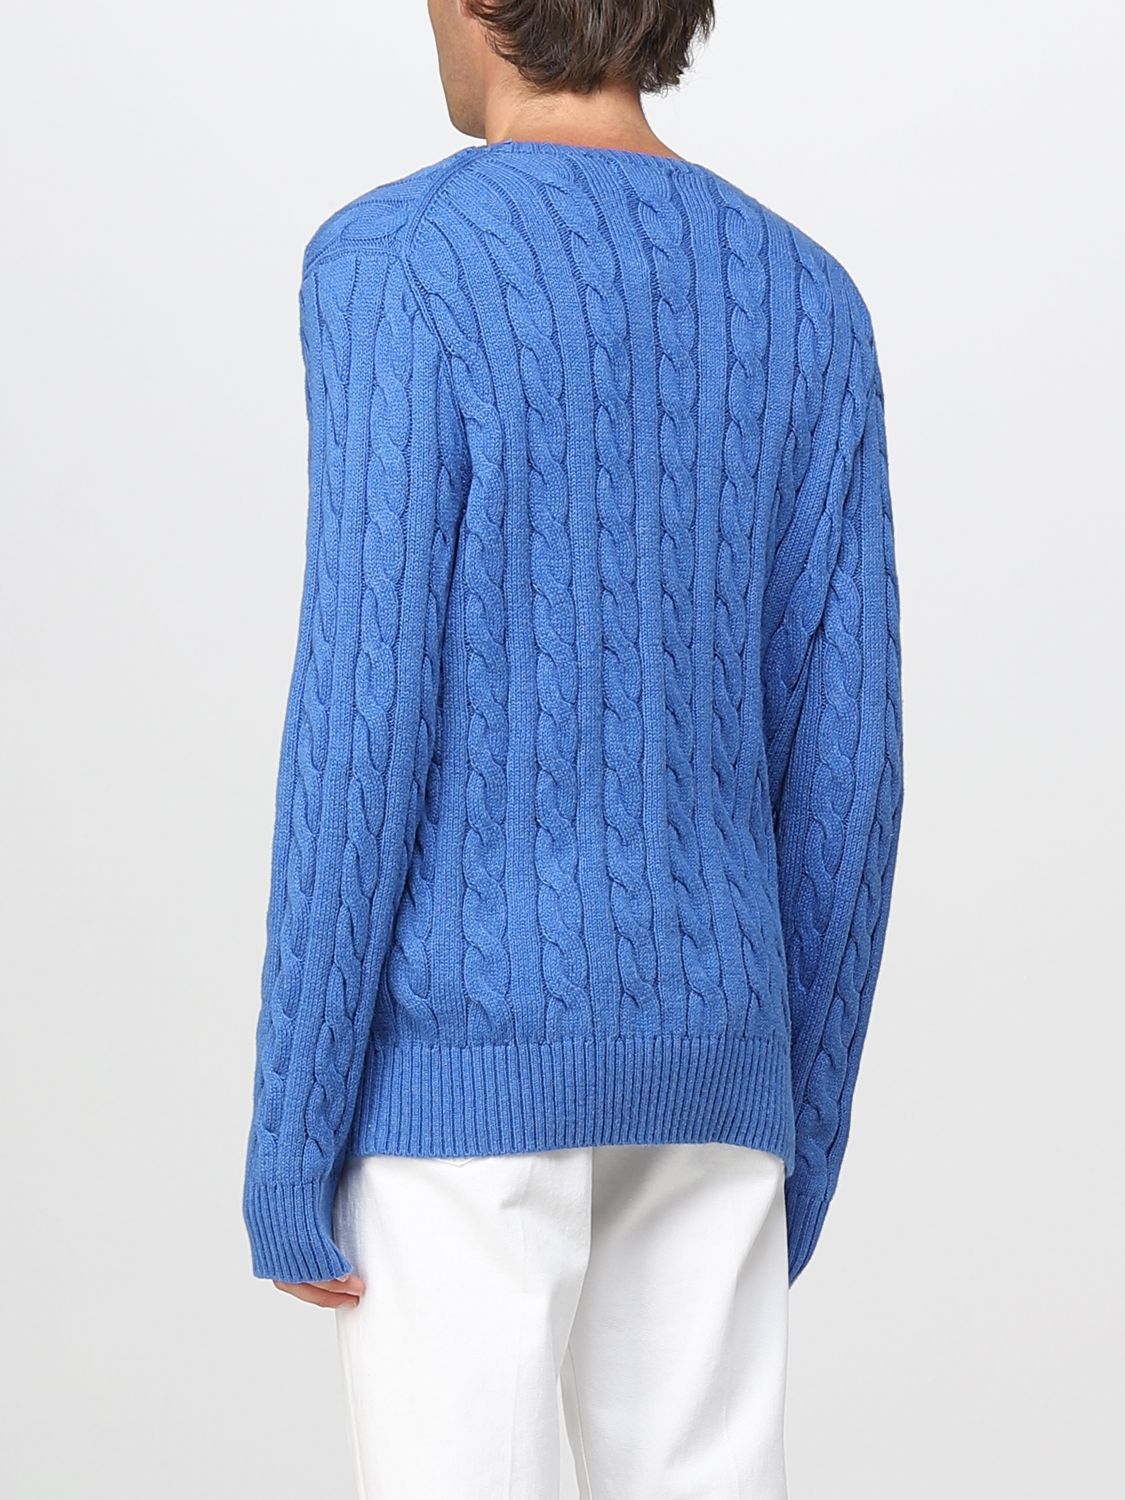 POLO RALPH LAUREN: sweater for man - Gnawed Blue | Polo Ralph Lauren ...